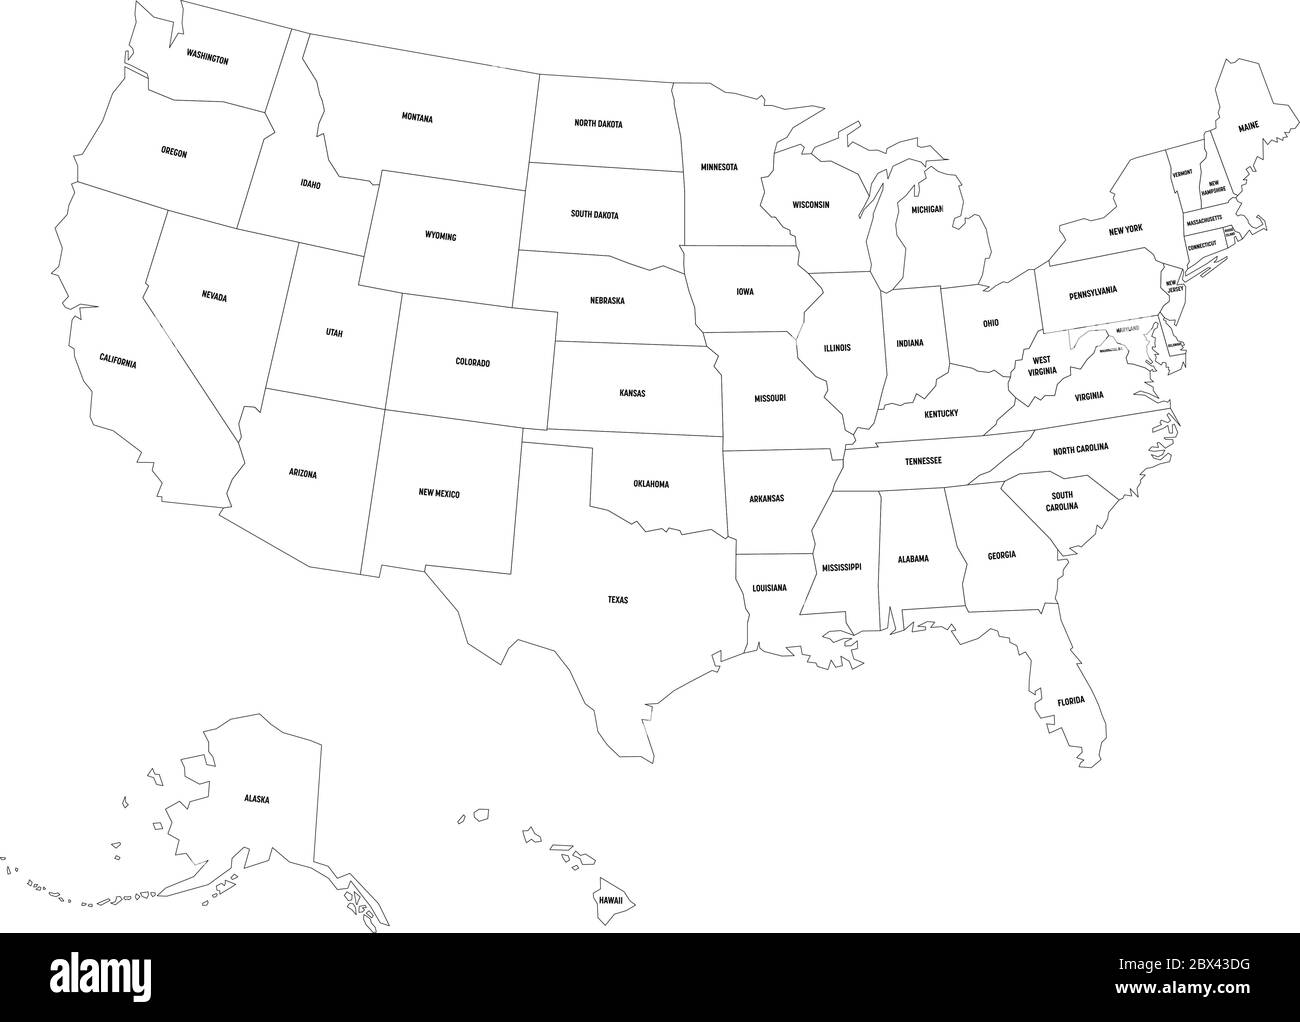 Politische Karte der Vereinigten Staaten von Amerika, USA. Einfache flache, schwarze Vektorkarte mit schwarzen Statusbezeichnungen auf weißem Hintergrund. Stock Vektor